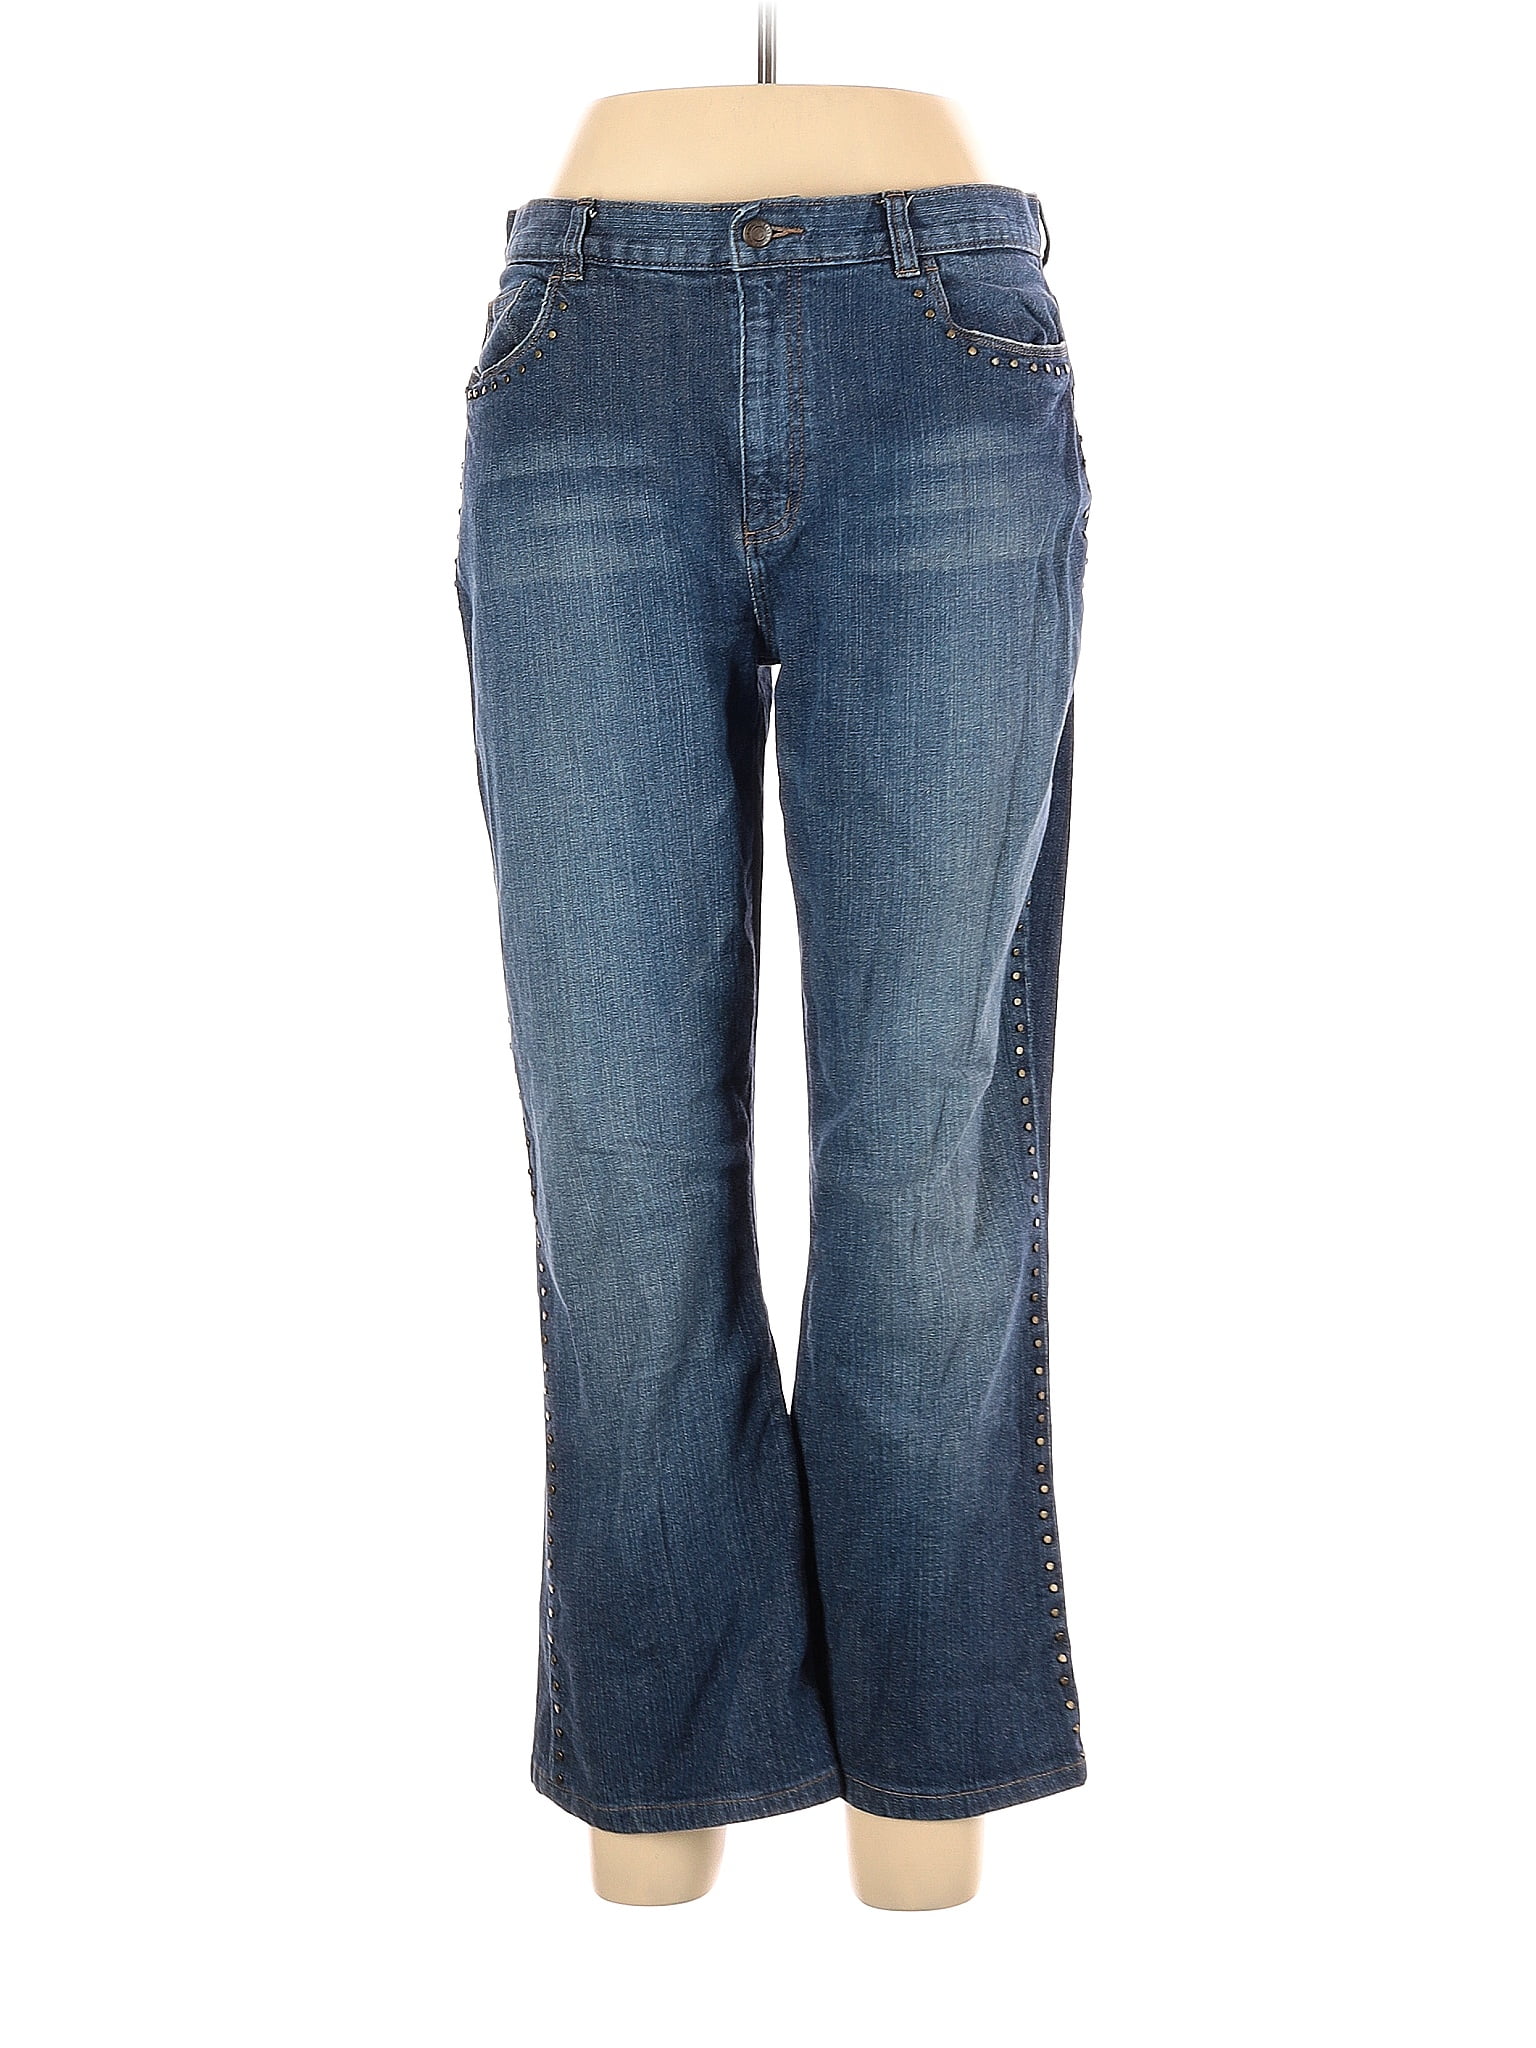 Lauren Jeans Co. Blue Jeans Size 12 - 69% off | thredUP